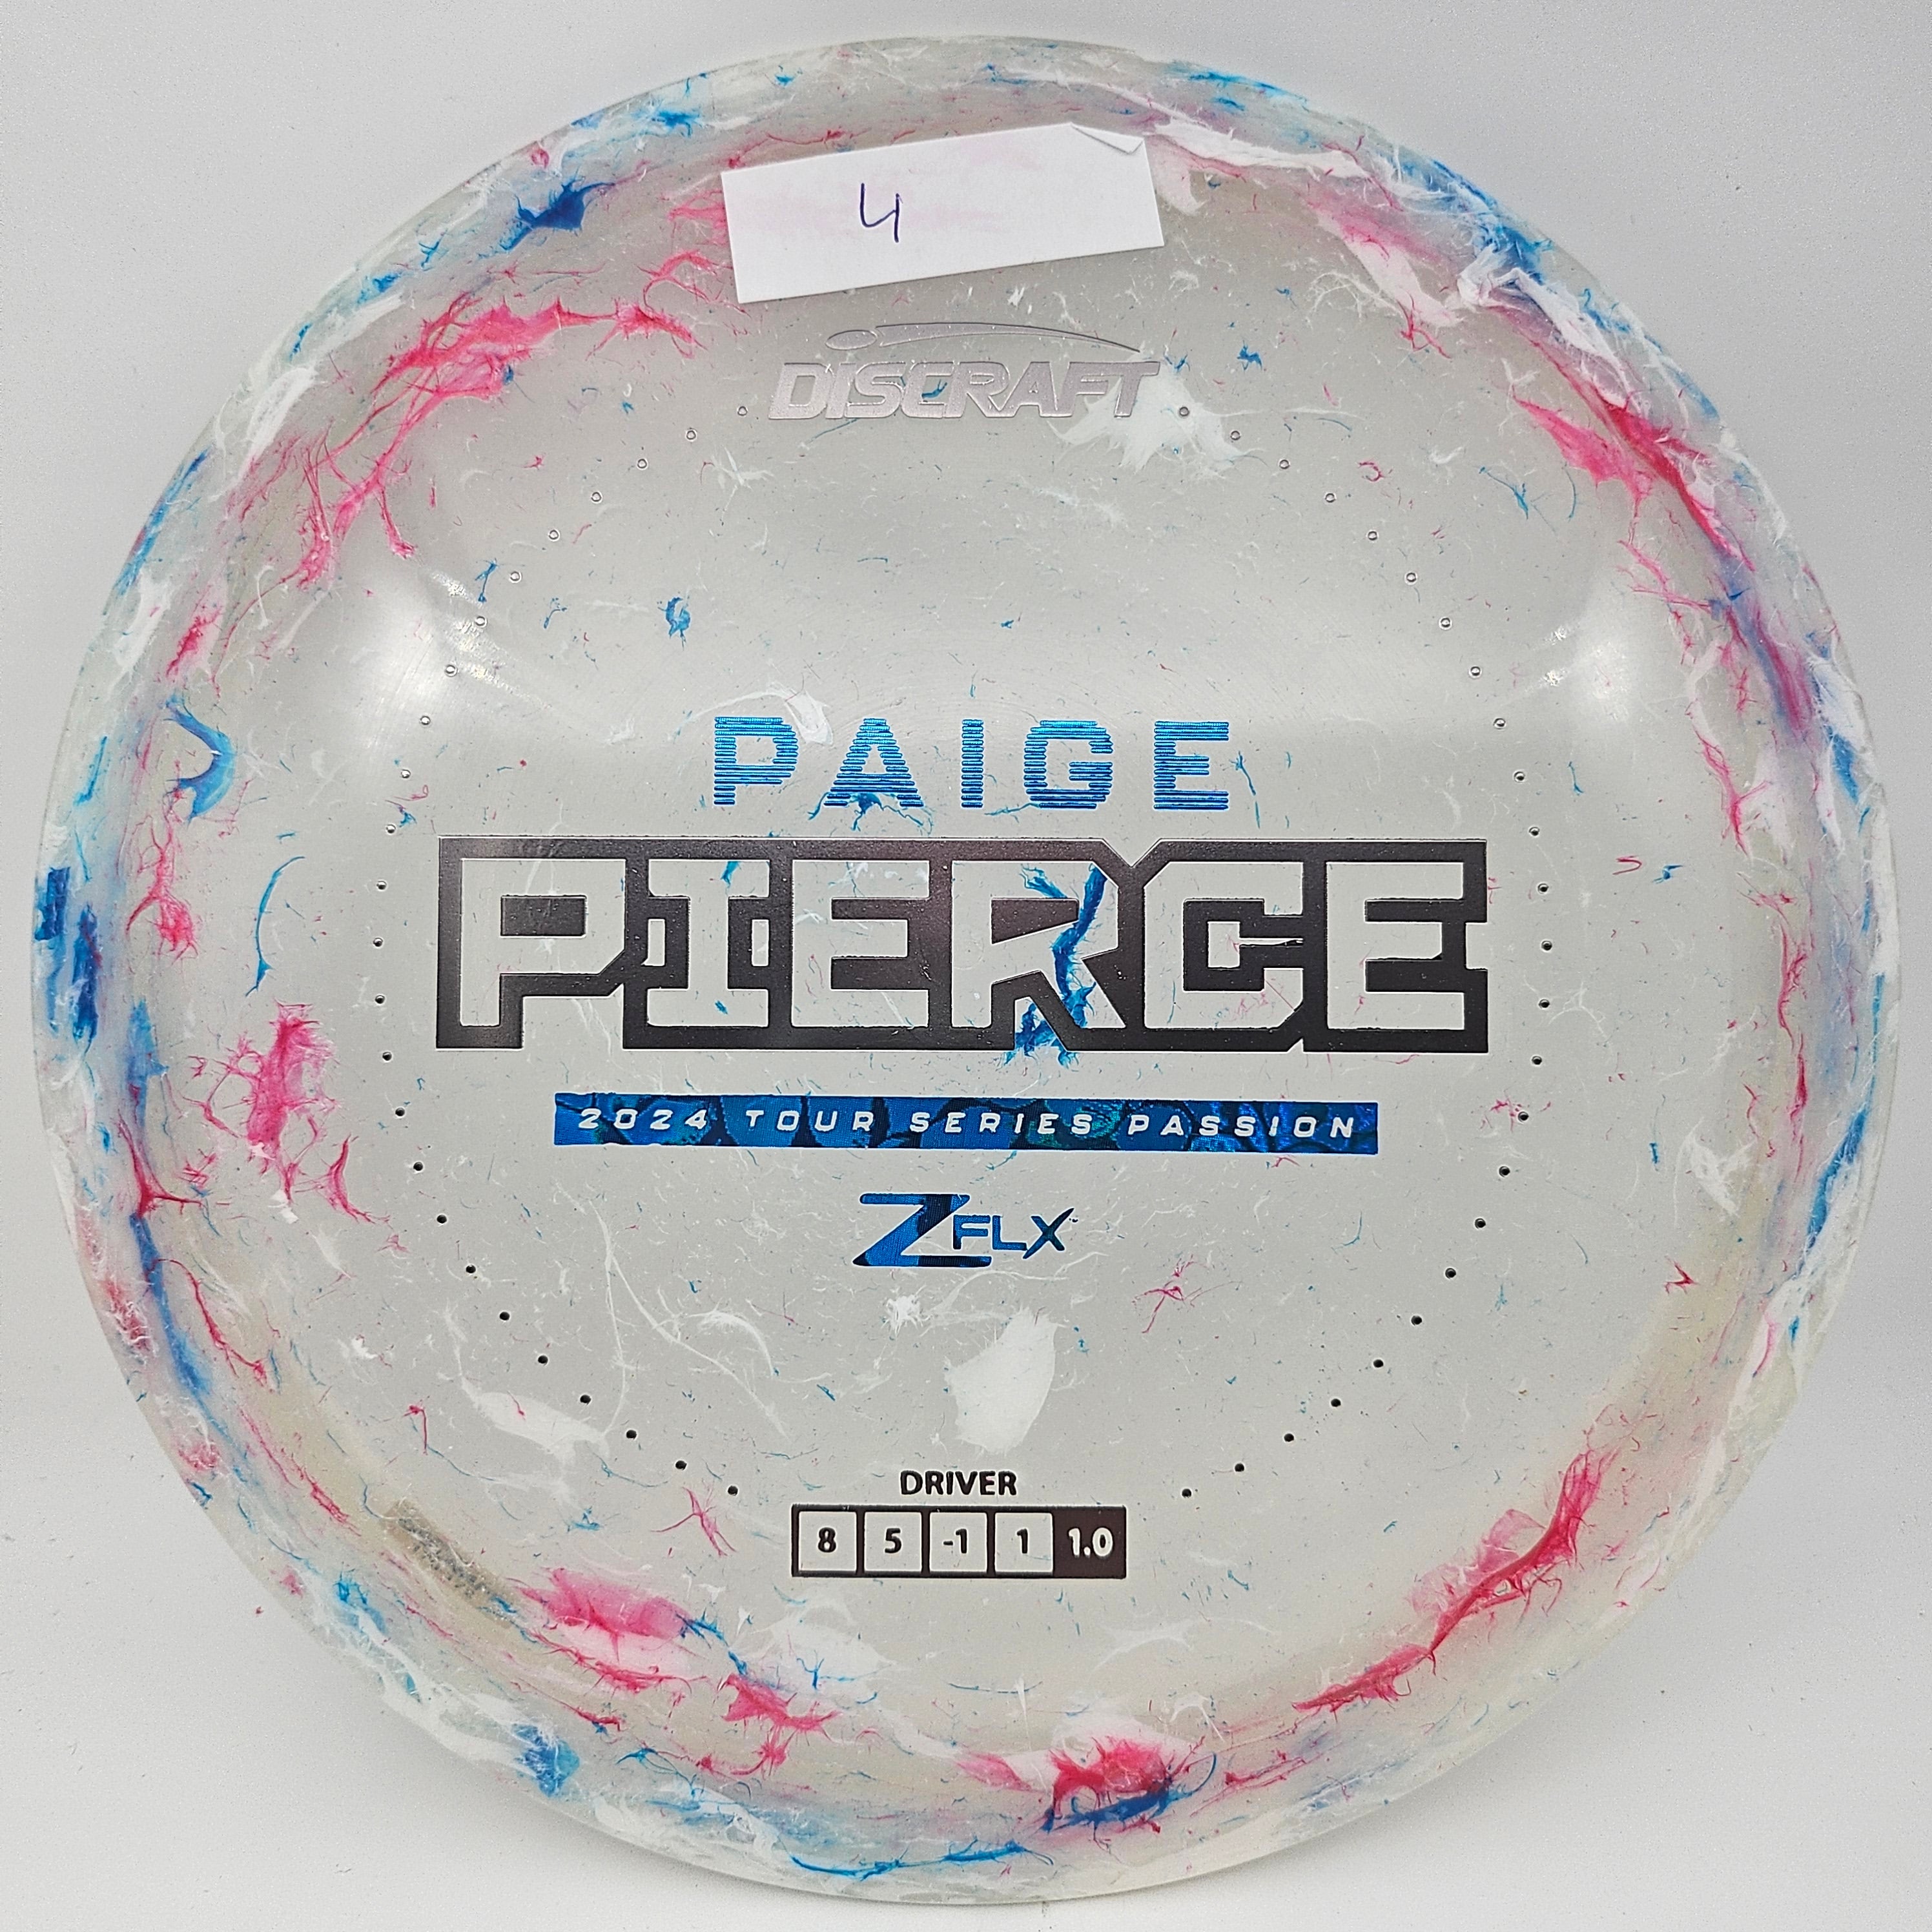 Z FLX Jawbreaker Passion - Paige Pierce Tour Series 2024